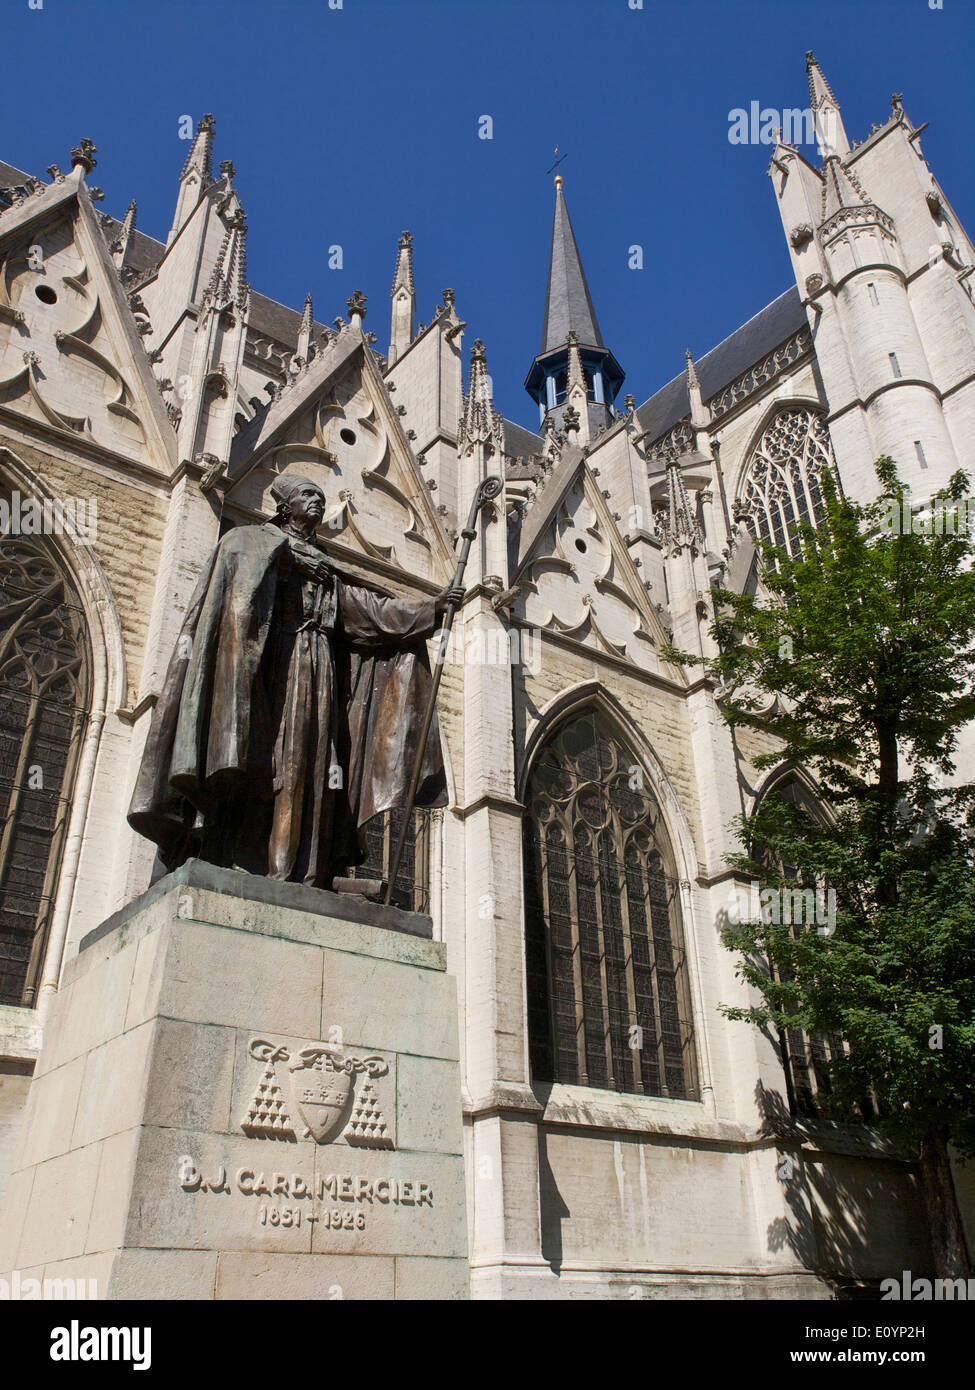 Statua del Cardinal Mercier a Sant Michiels en Goedele cattedrale a Bruxelles, in Belgio Foto Stock